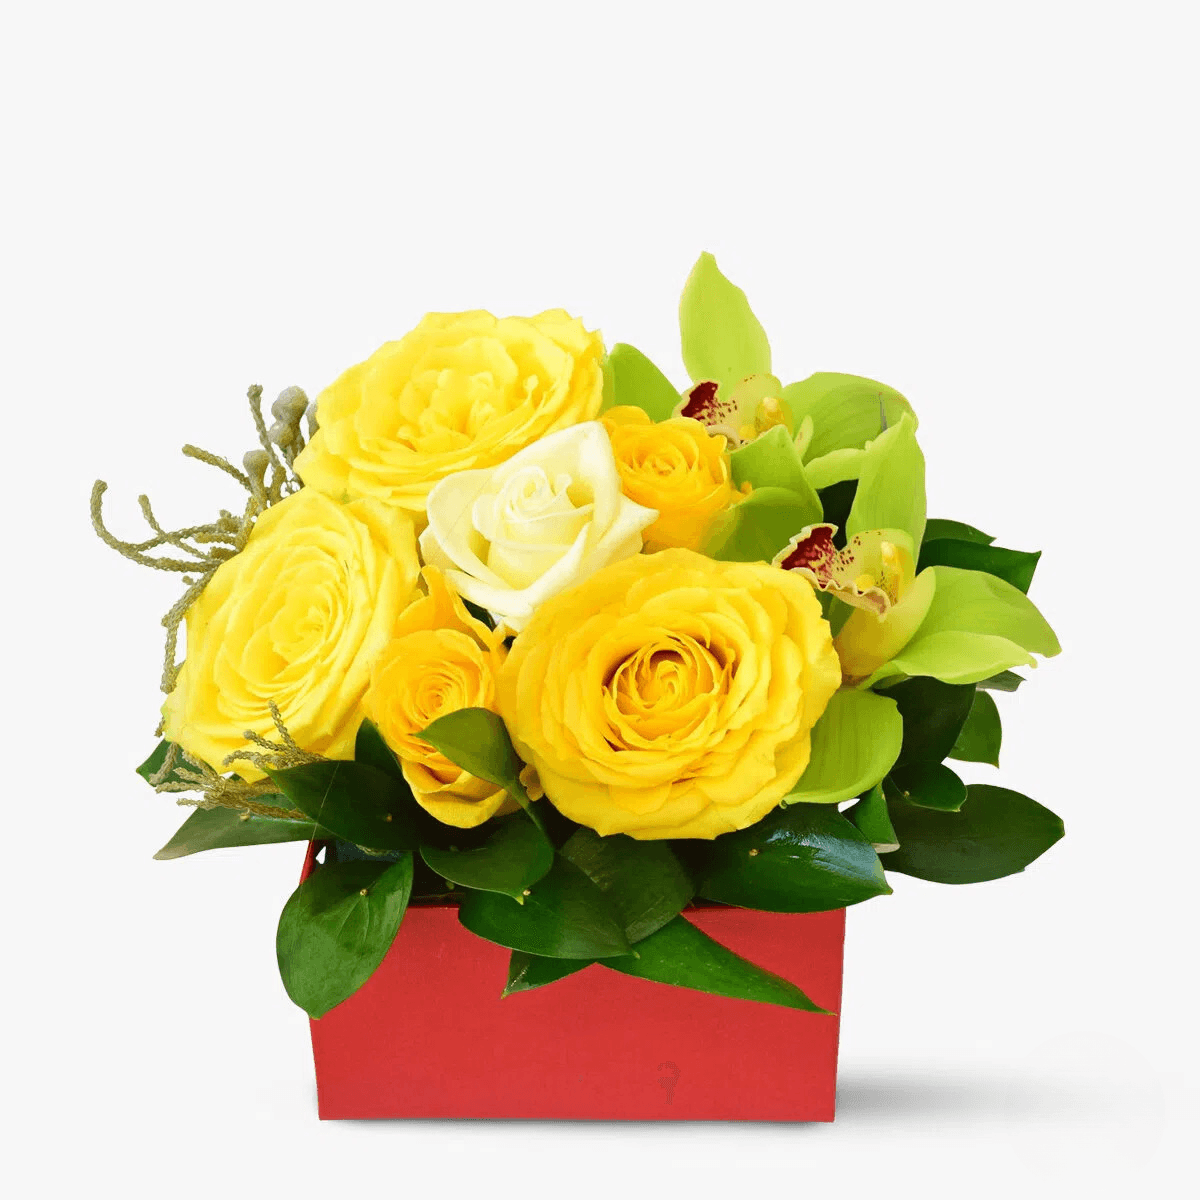 Flori business cu 6 trandafiri galbeni, 3 trandafir alb, 2 orhidee cymbidium verde Moment de sarbatoare